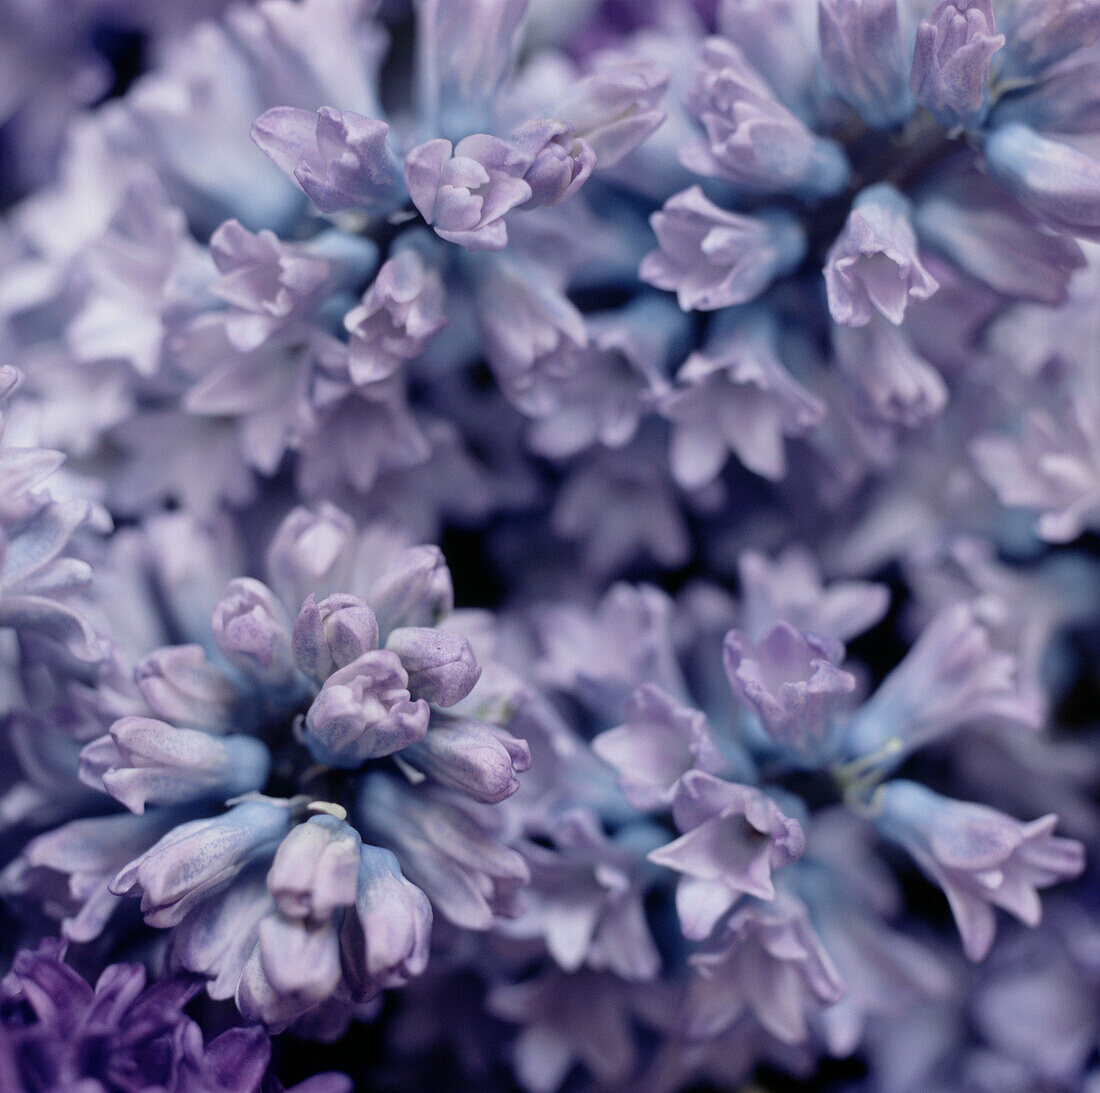 Detail of purple hyacinth flowers